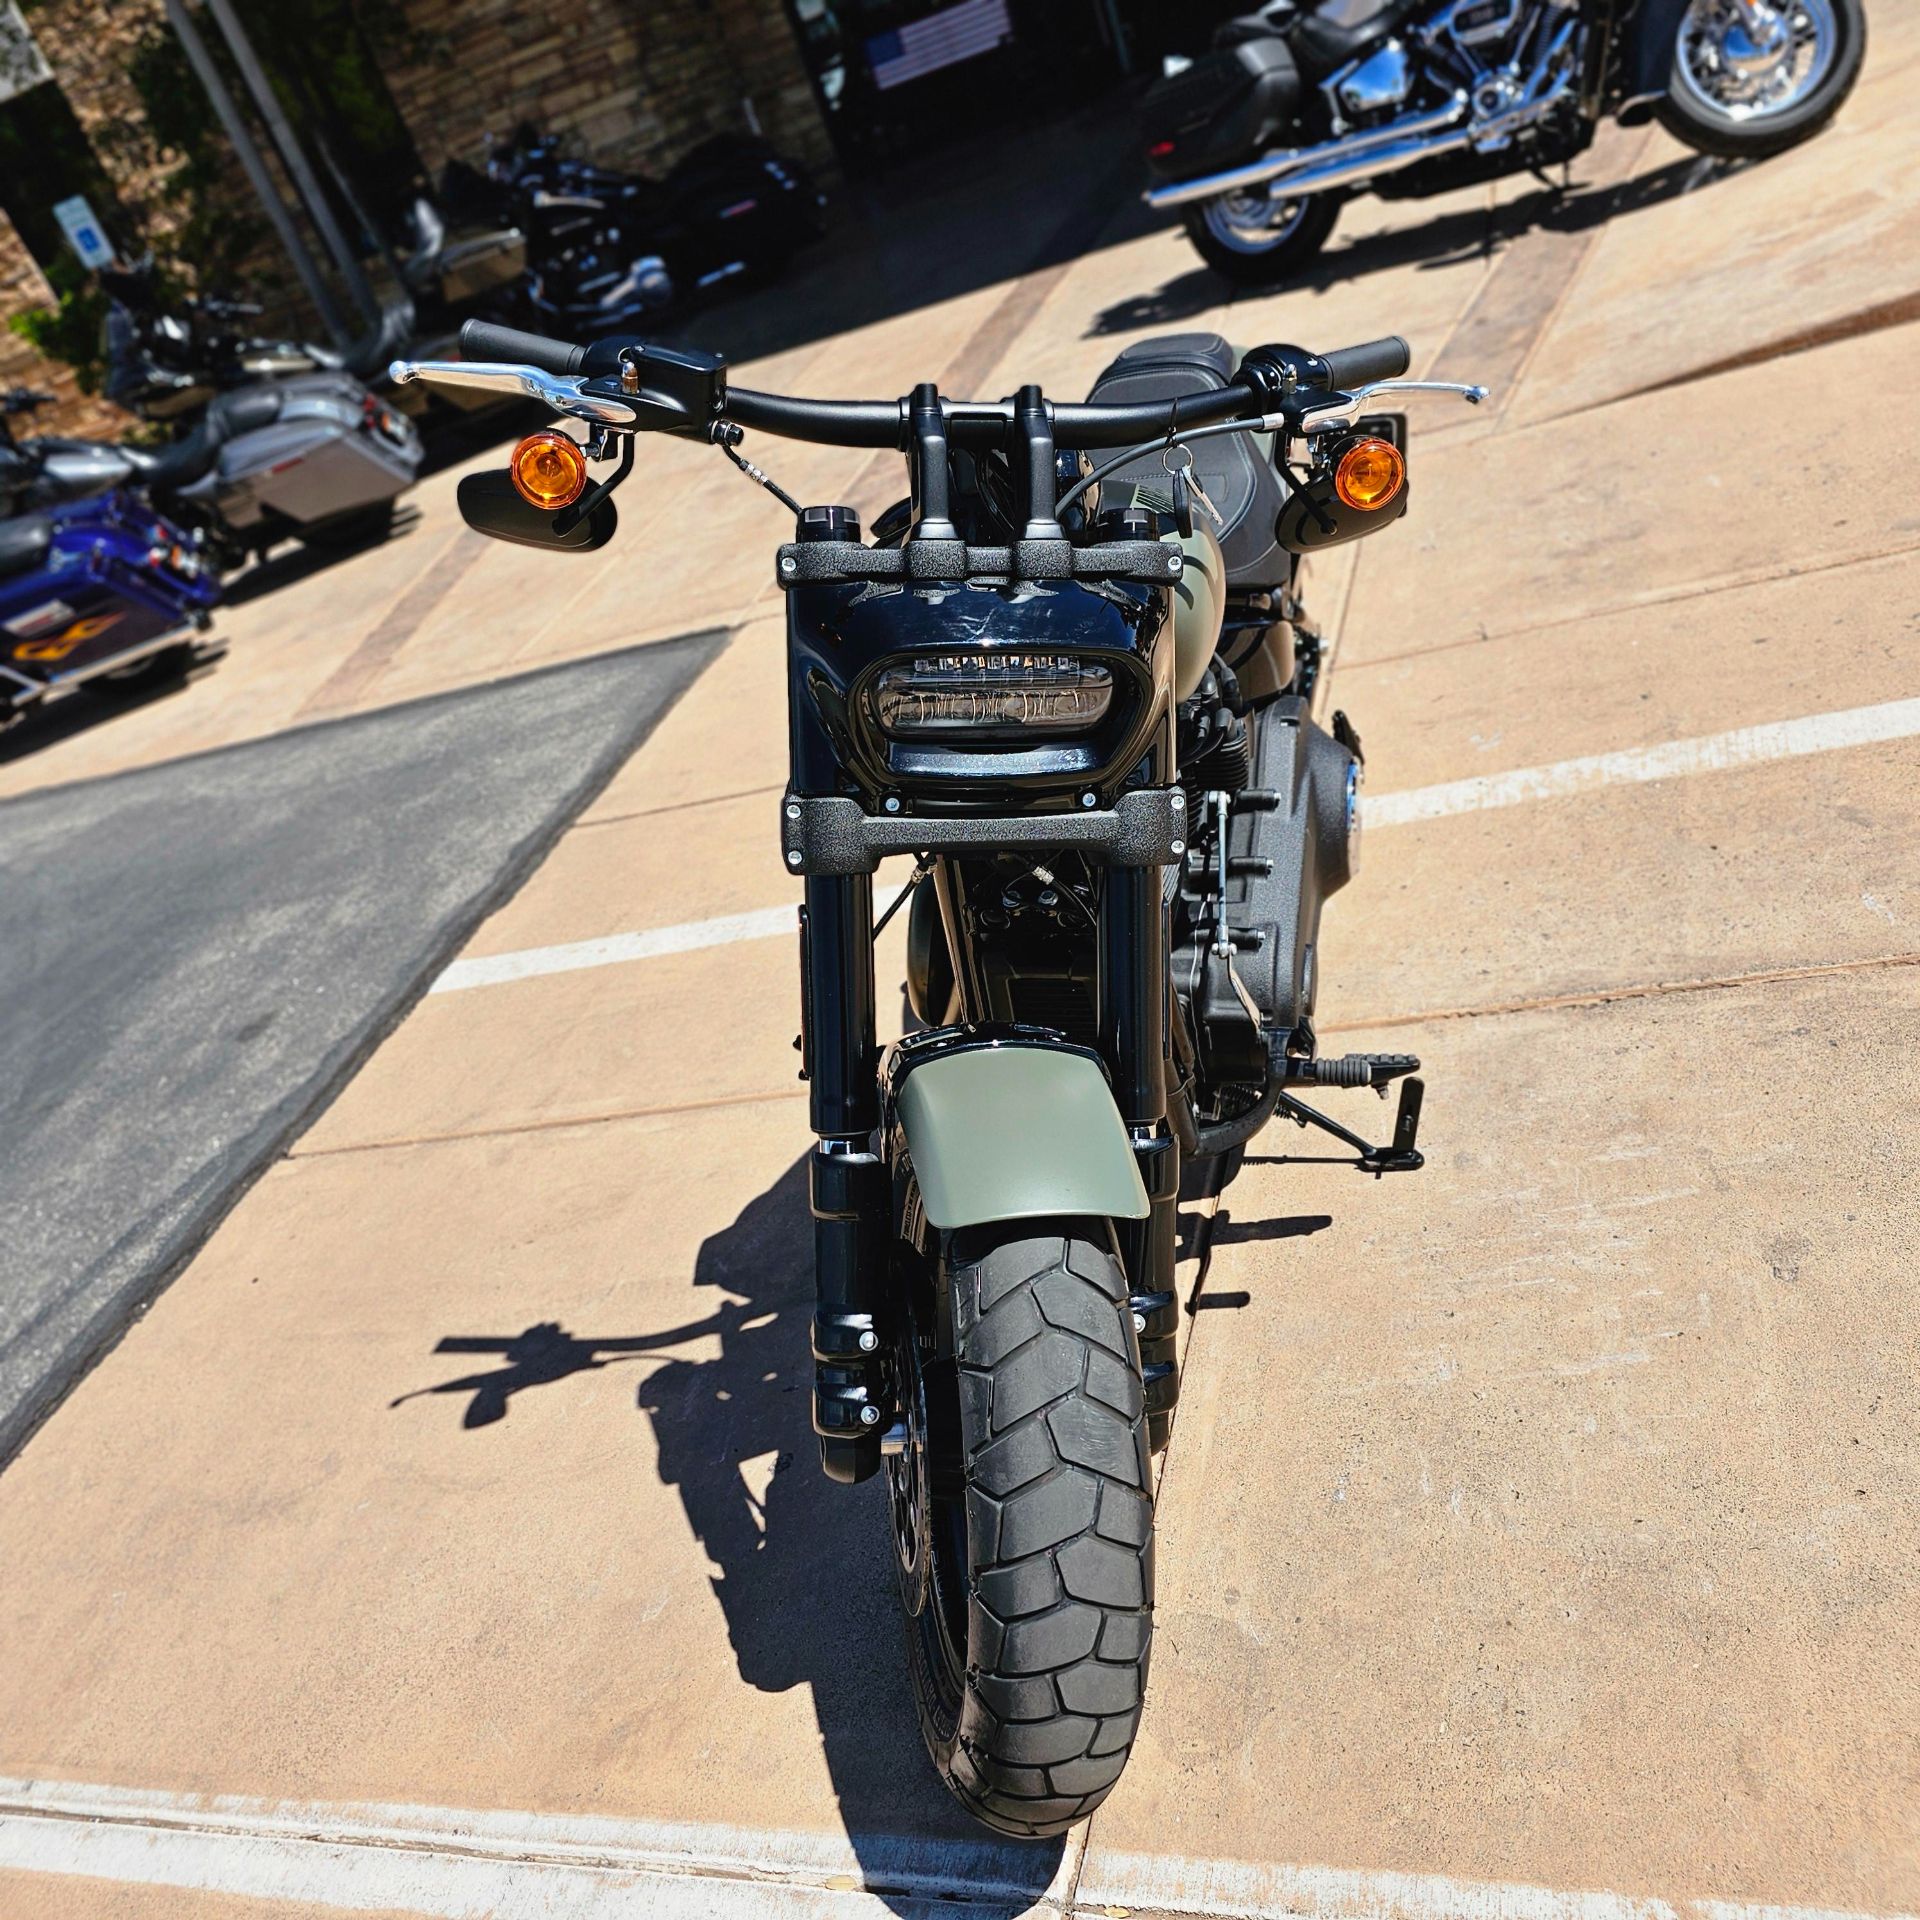 2021 Harley-Davidson Fat Bob® 114 in Washington, Utah - Photo 6